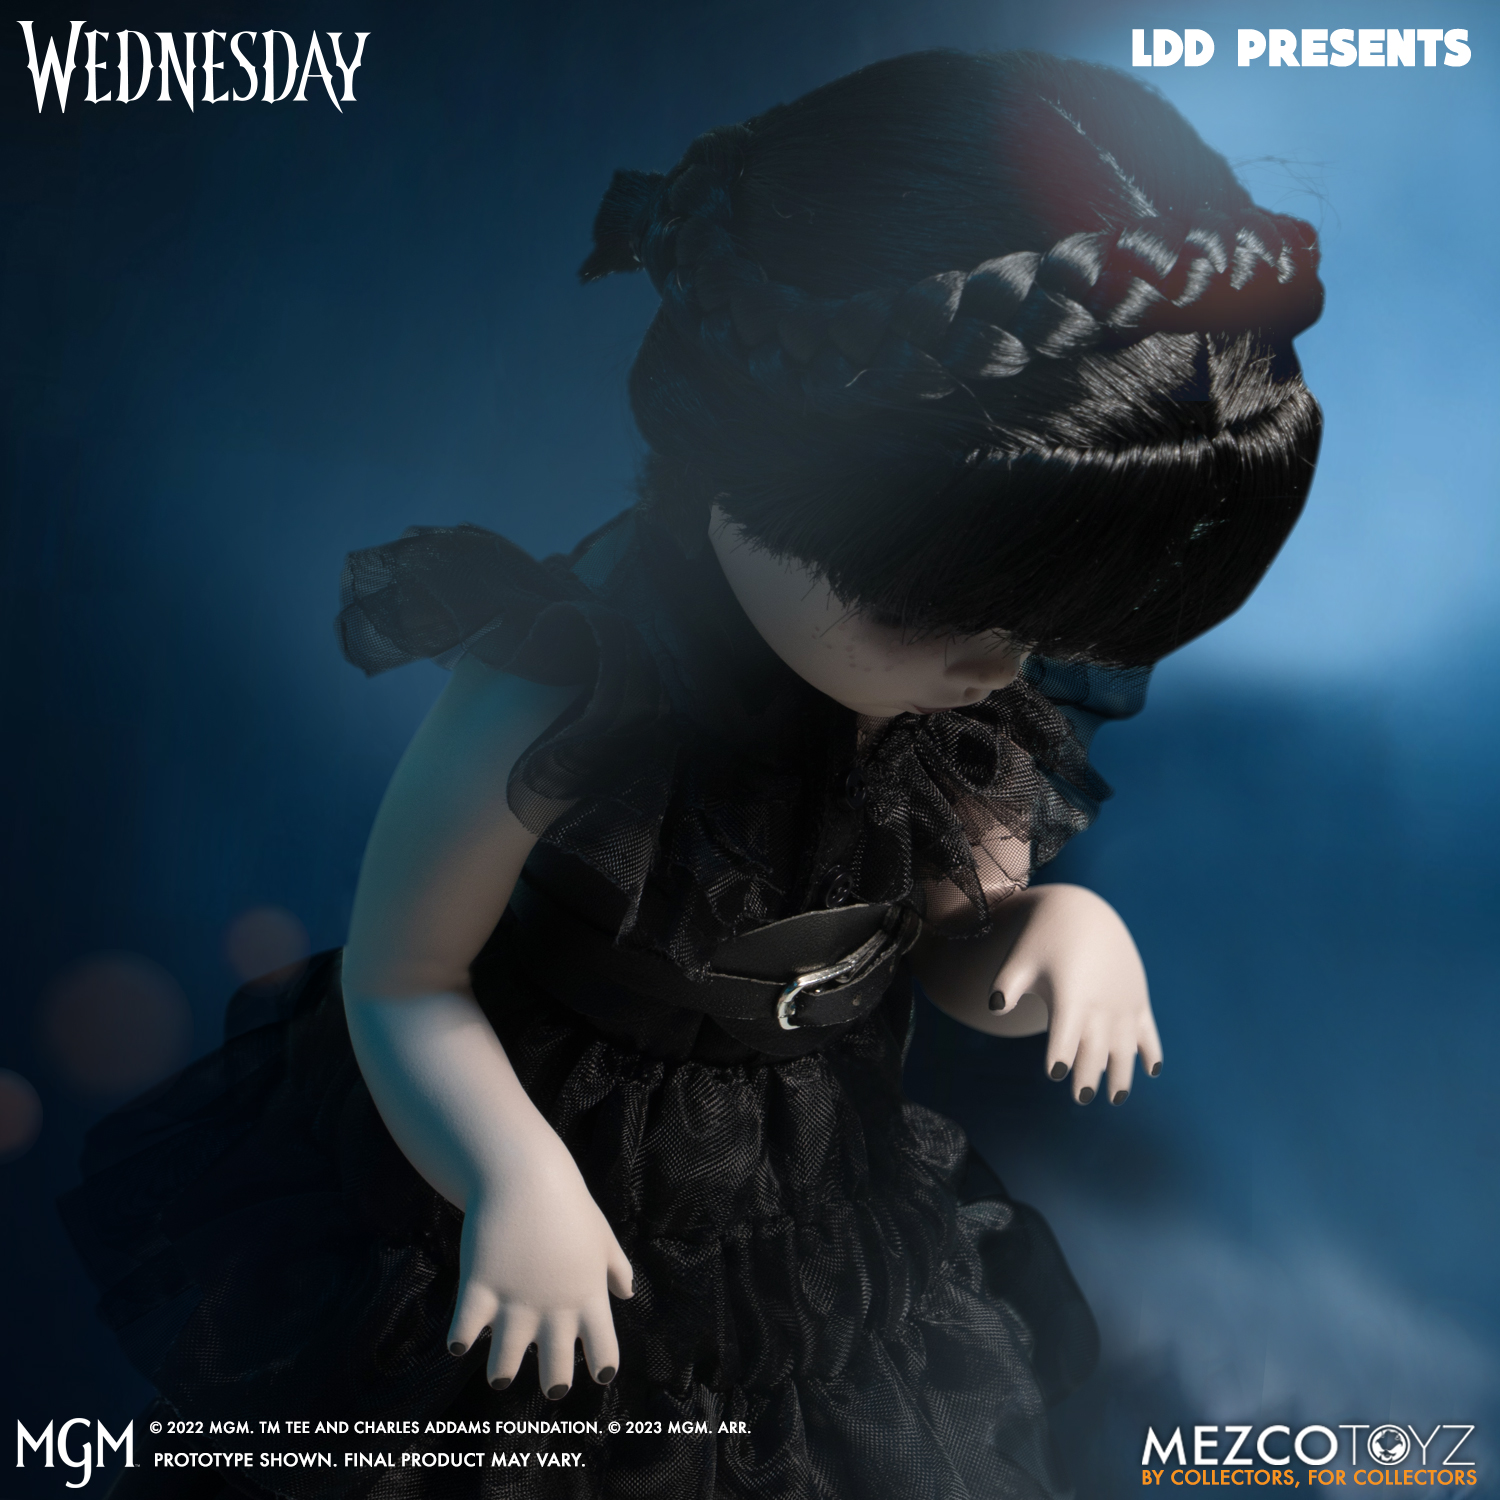 Poupée Mercredi Dancing, Living Dead Dolls Presents - Wednesday - Mezco Toys